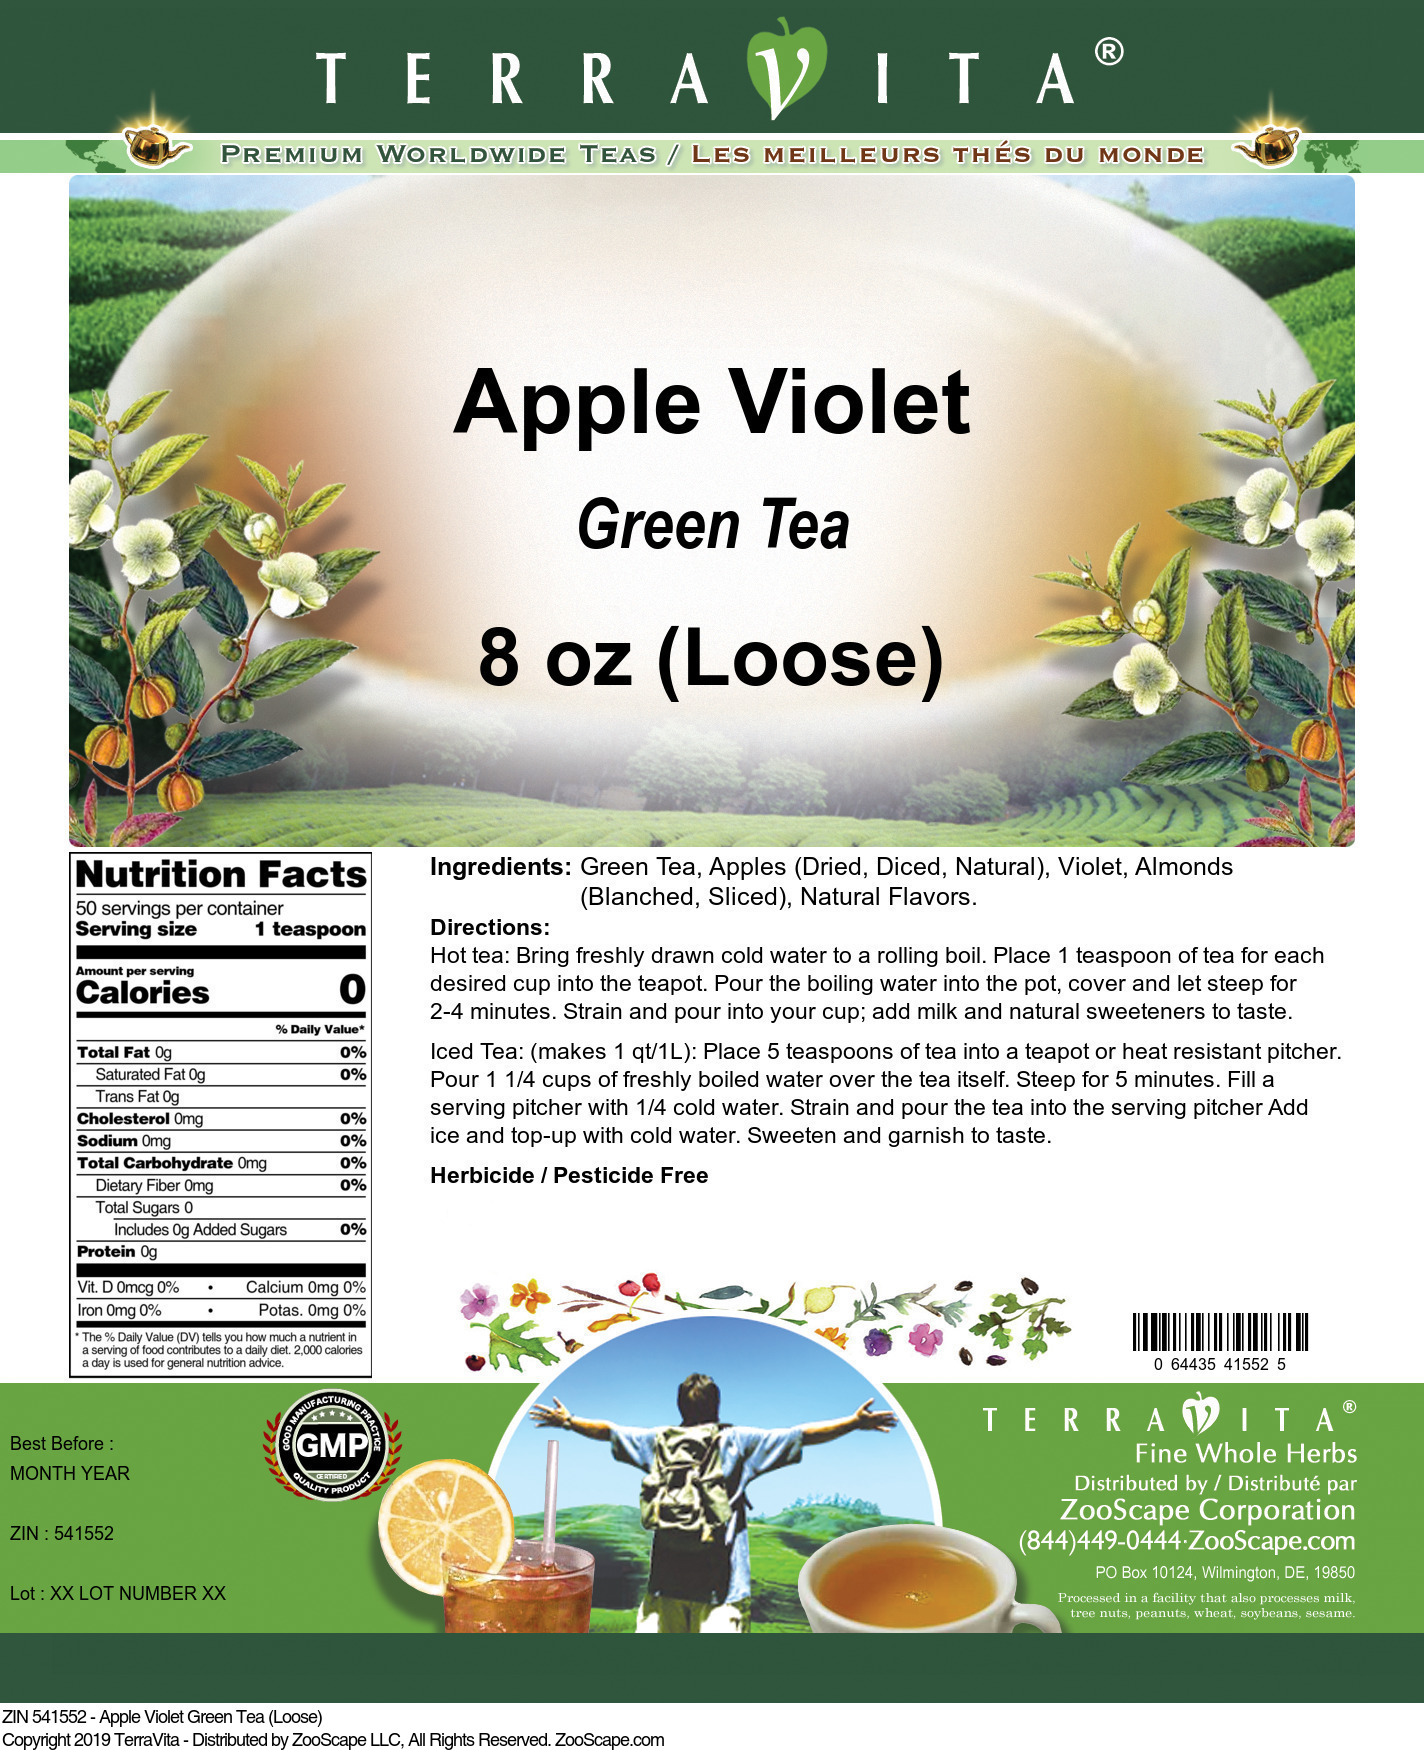 Apple Violet Green Tea (Loose) - Label